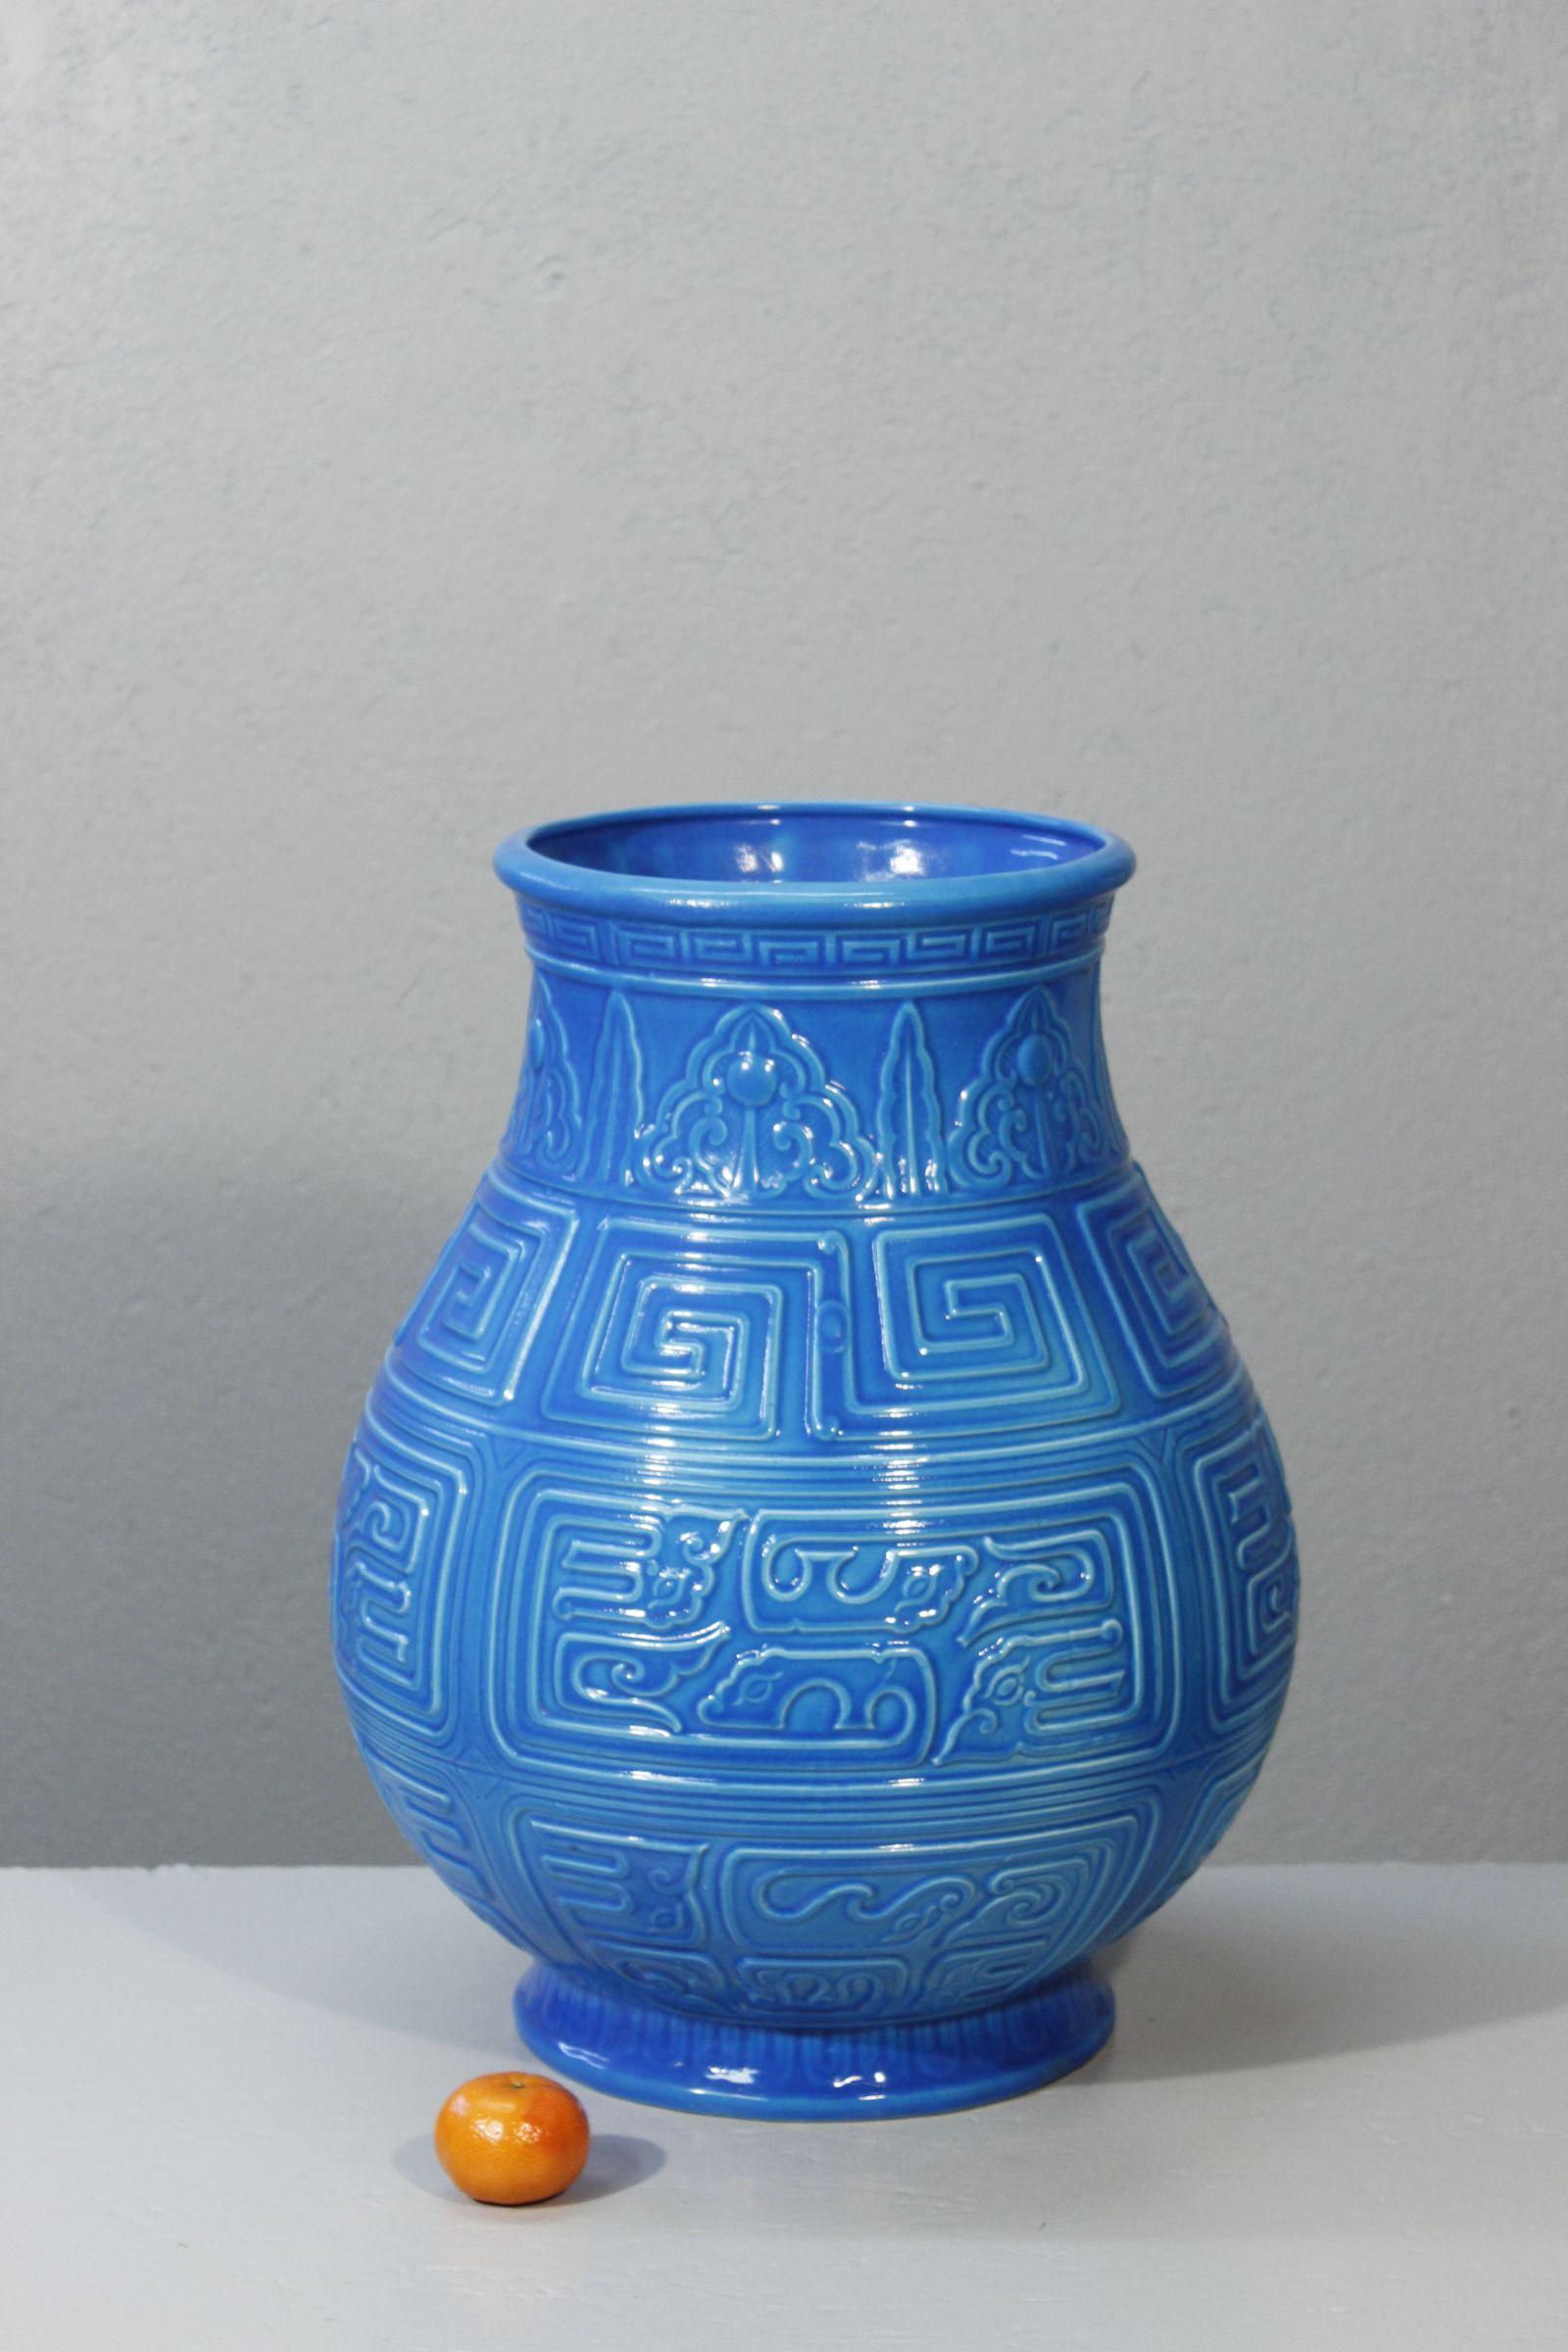 Imposante Longwy-Vase aus der Majolika-Serie, die vom Ende des 19. bis zum Beginn des 20. Jahrhunderts vor allem in den Primavera-Werkstätten hergestellt wurde. 

Dieses besondere Modell ist in einem tiefen Türkisblau gehalten und wurde nach einer